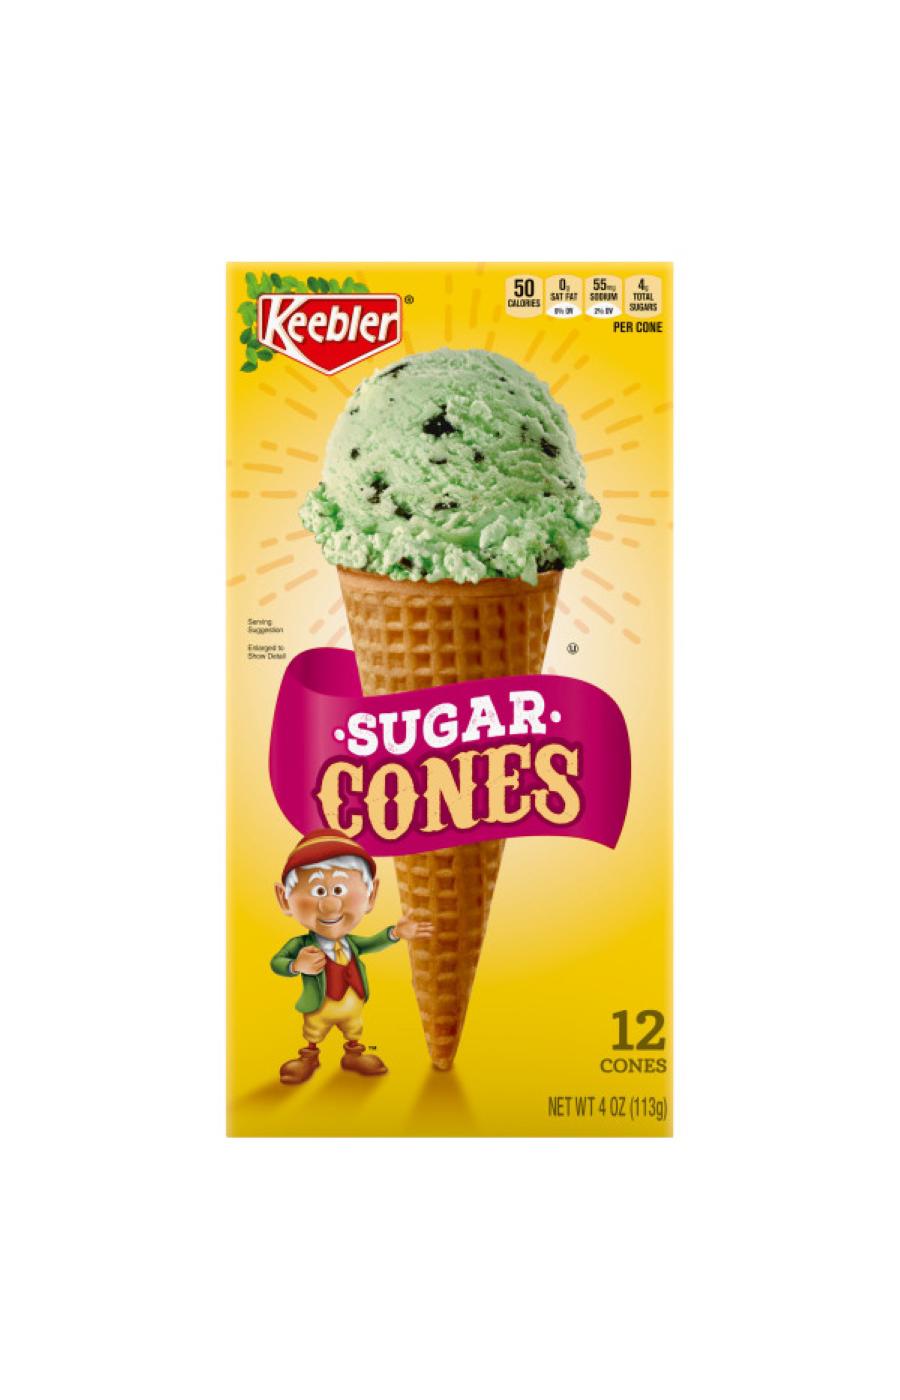 Keebler Sugar Cones; image 1 of 5